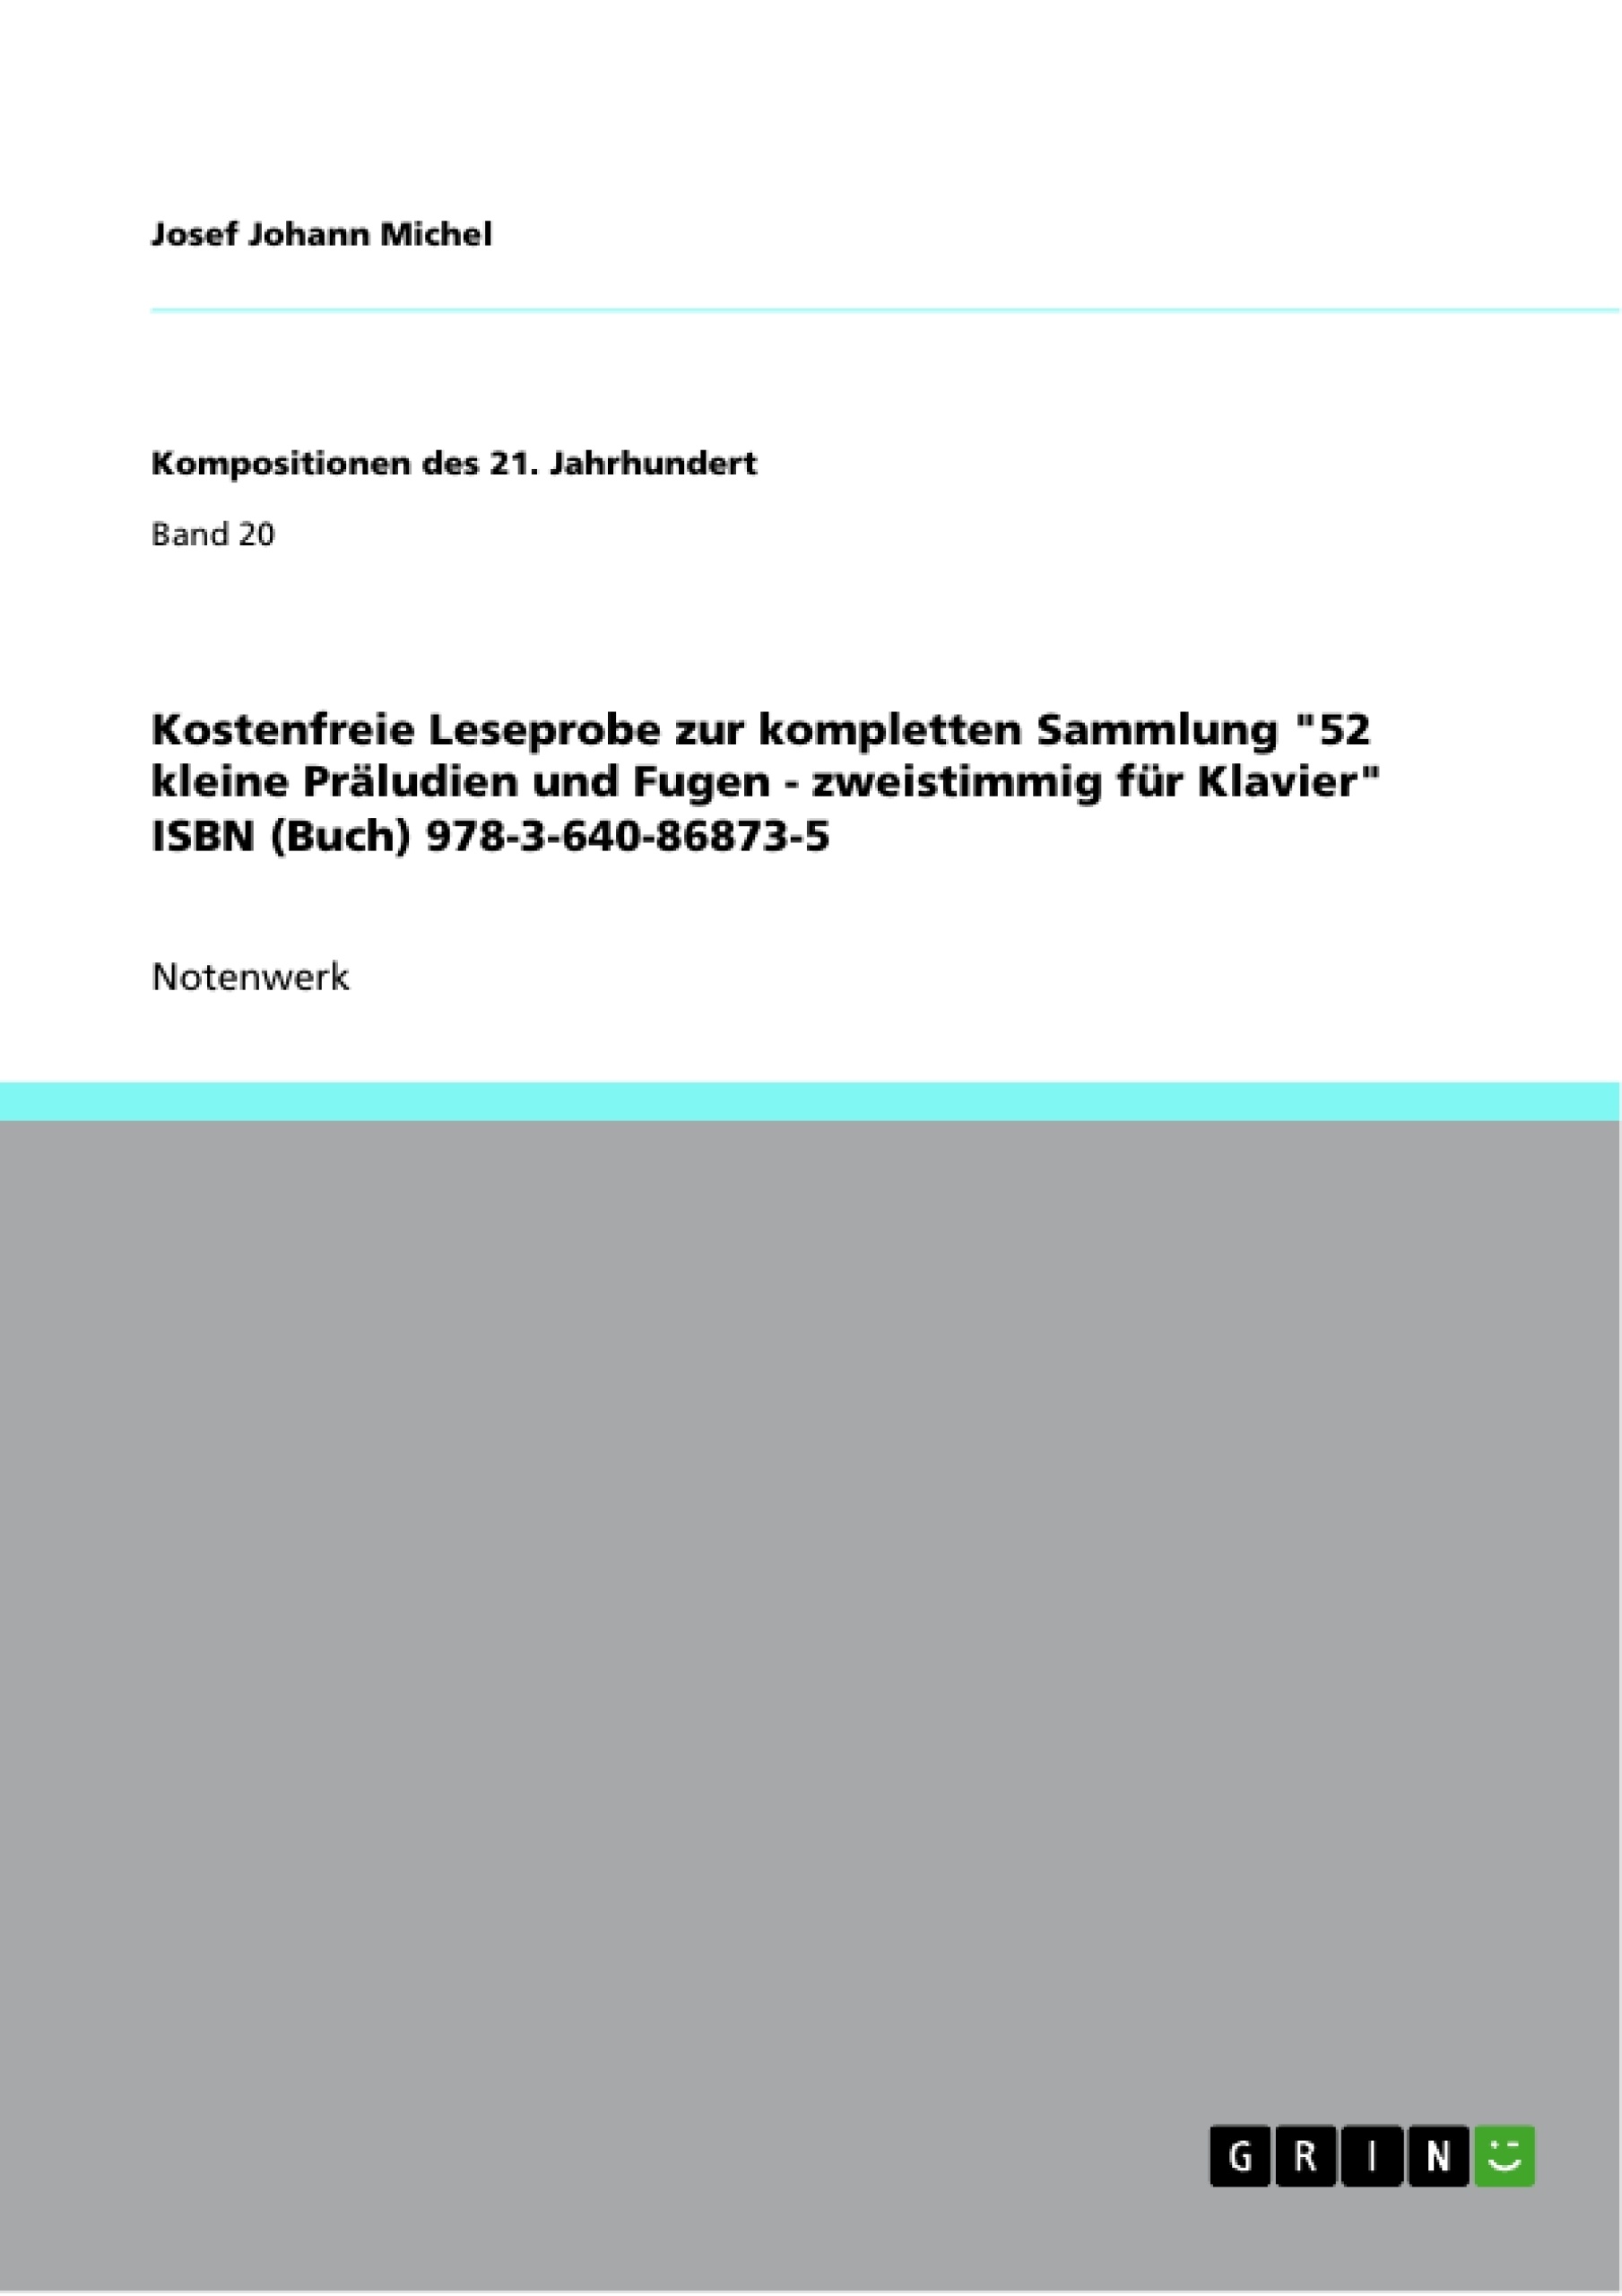 Title: Kostenfreie Leseprobe zur kompletten Sammlung "52 kleine Präludien und Fugen - zweistimmig für Klavier" ISBN (Buch) 978-3-640-86873-5